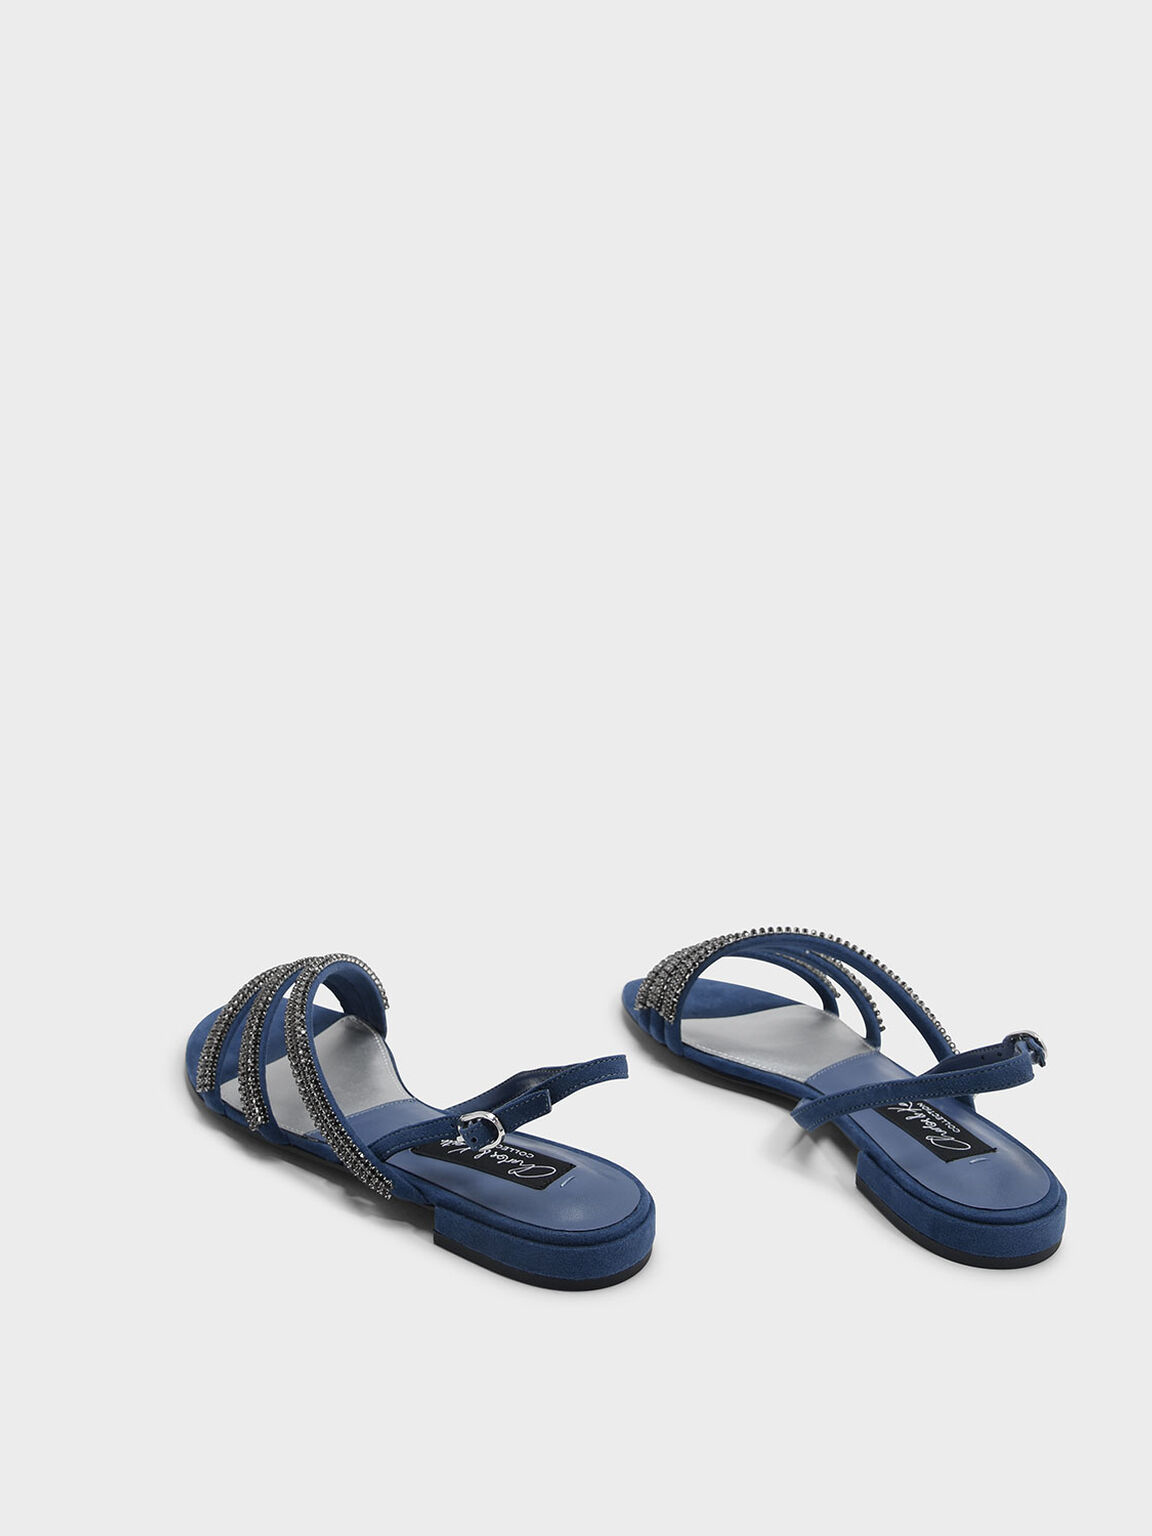 Embellished Suede Slingback Sandals, Blue, hi-res